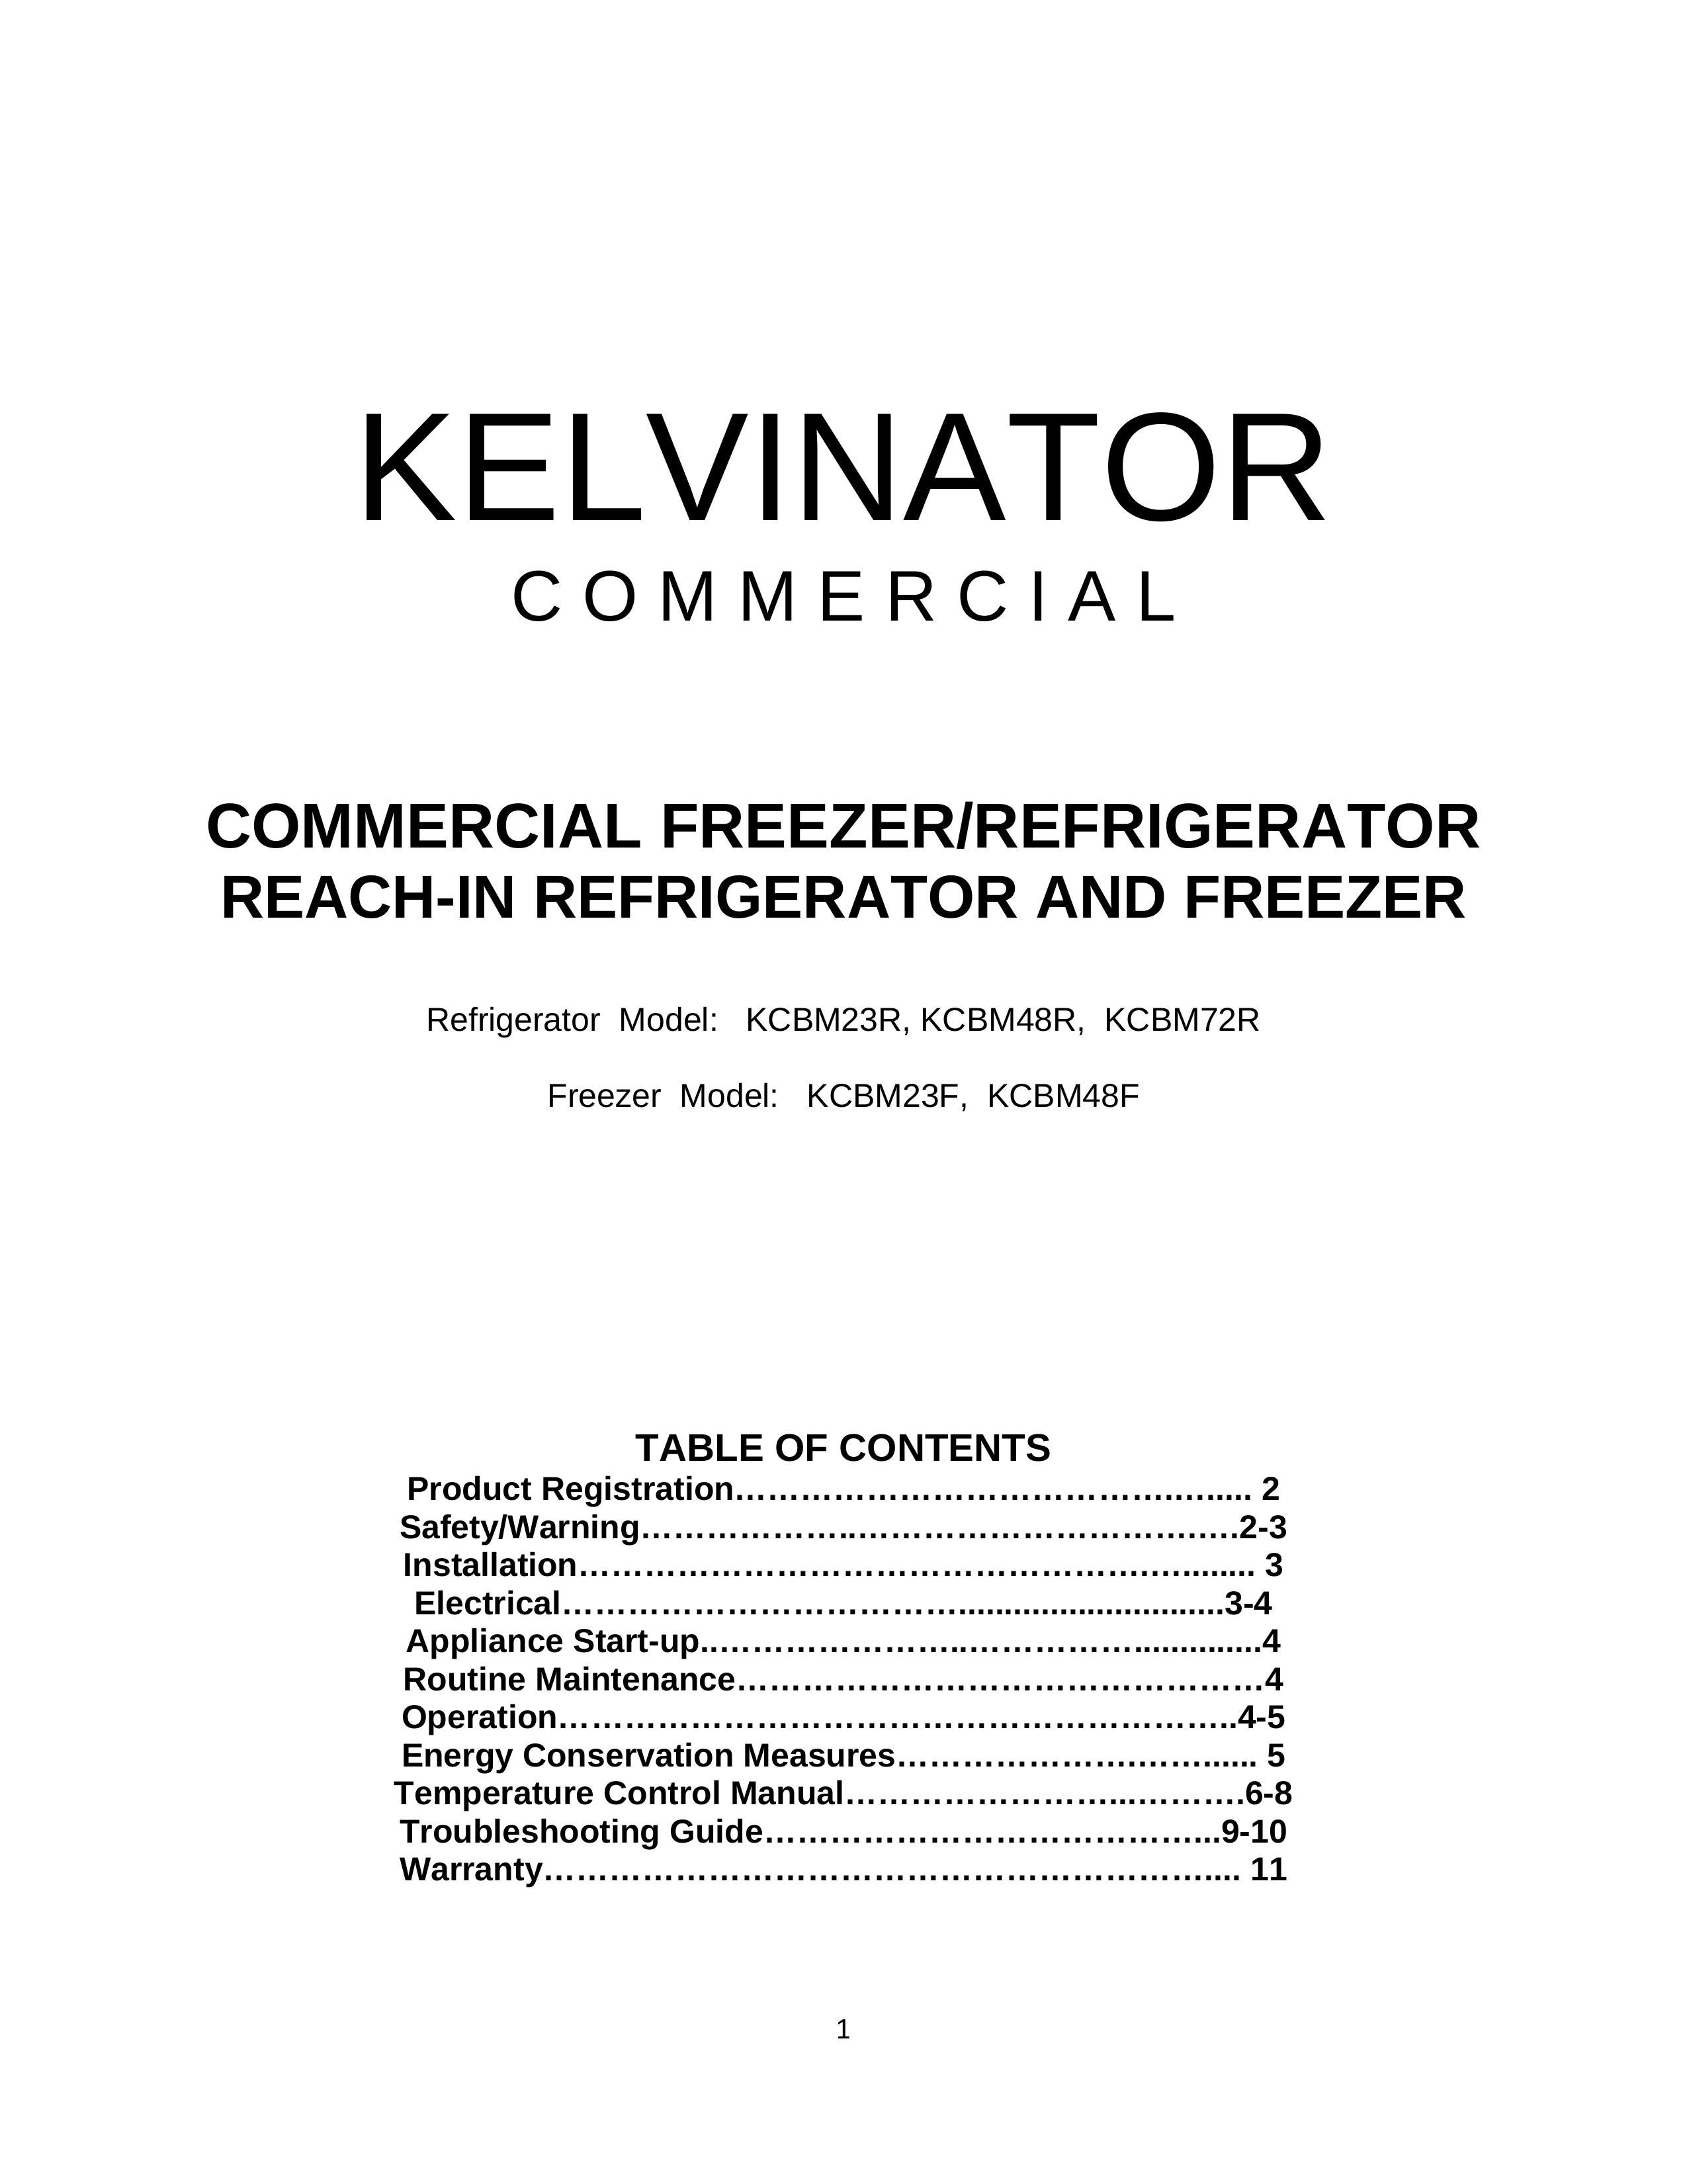 Kelvinator KCBM23F Refrigerator User Manual